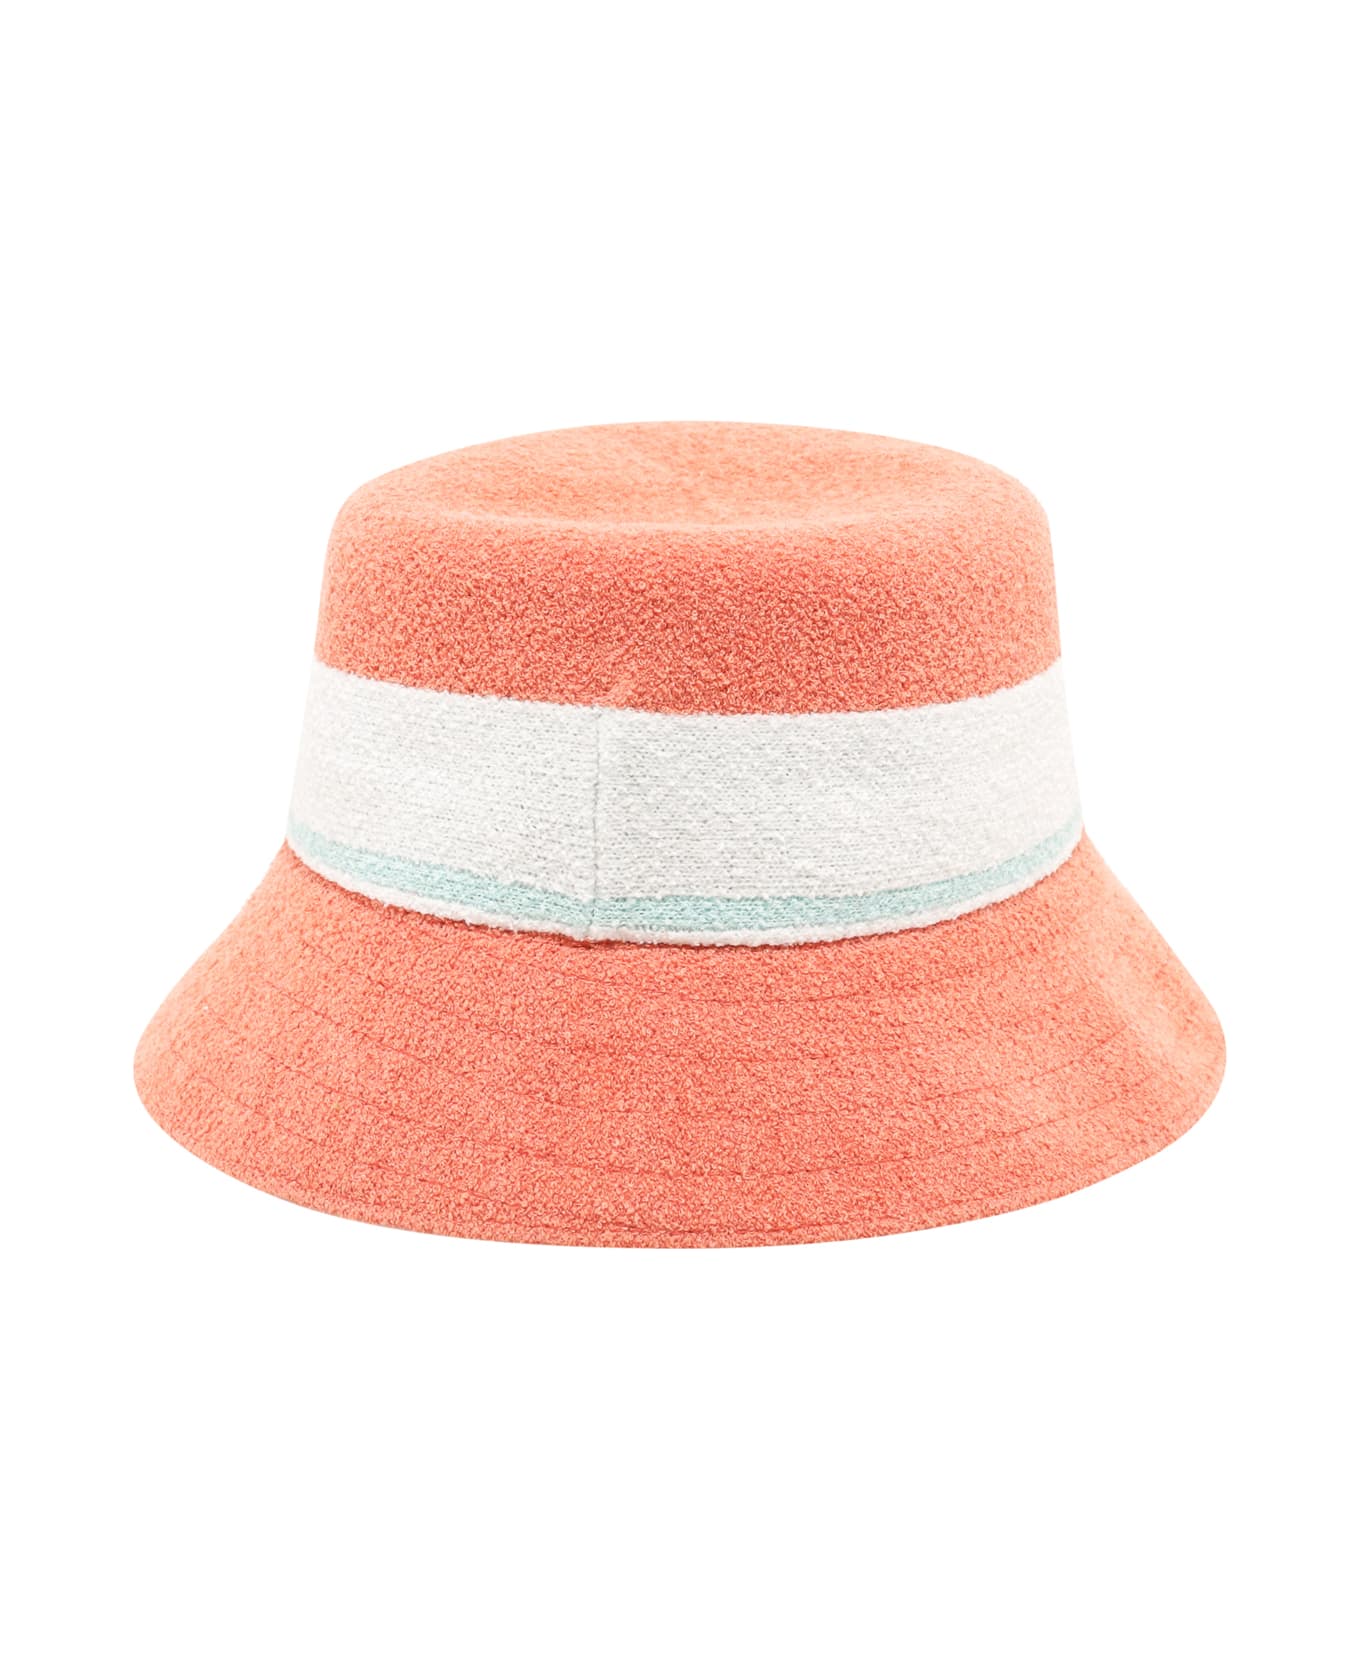 Kangol Hat - Pink 帽子